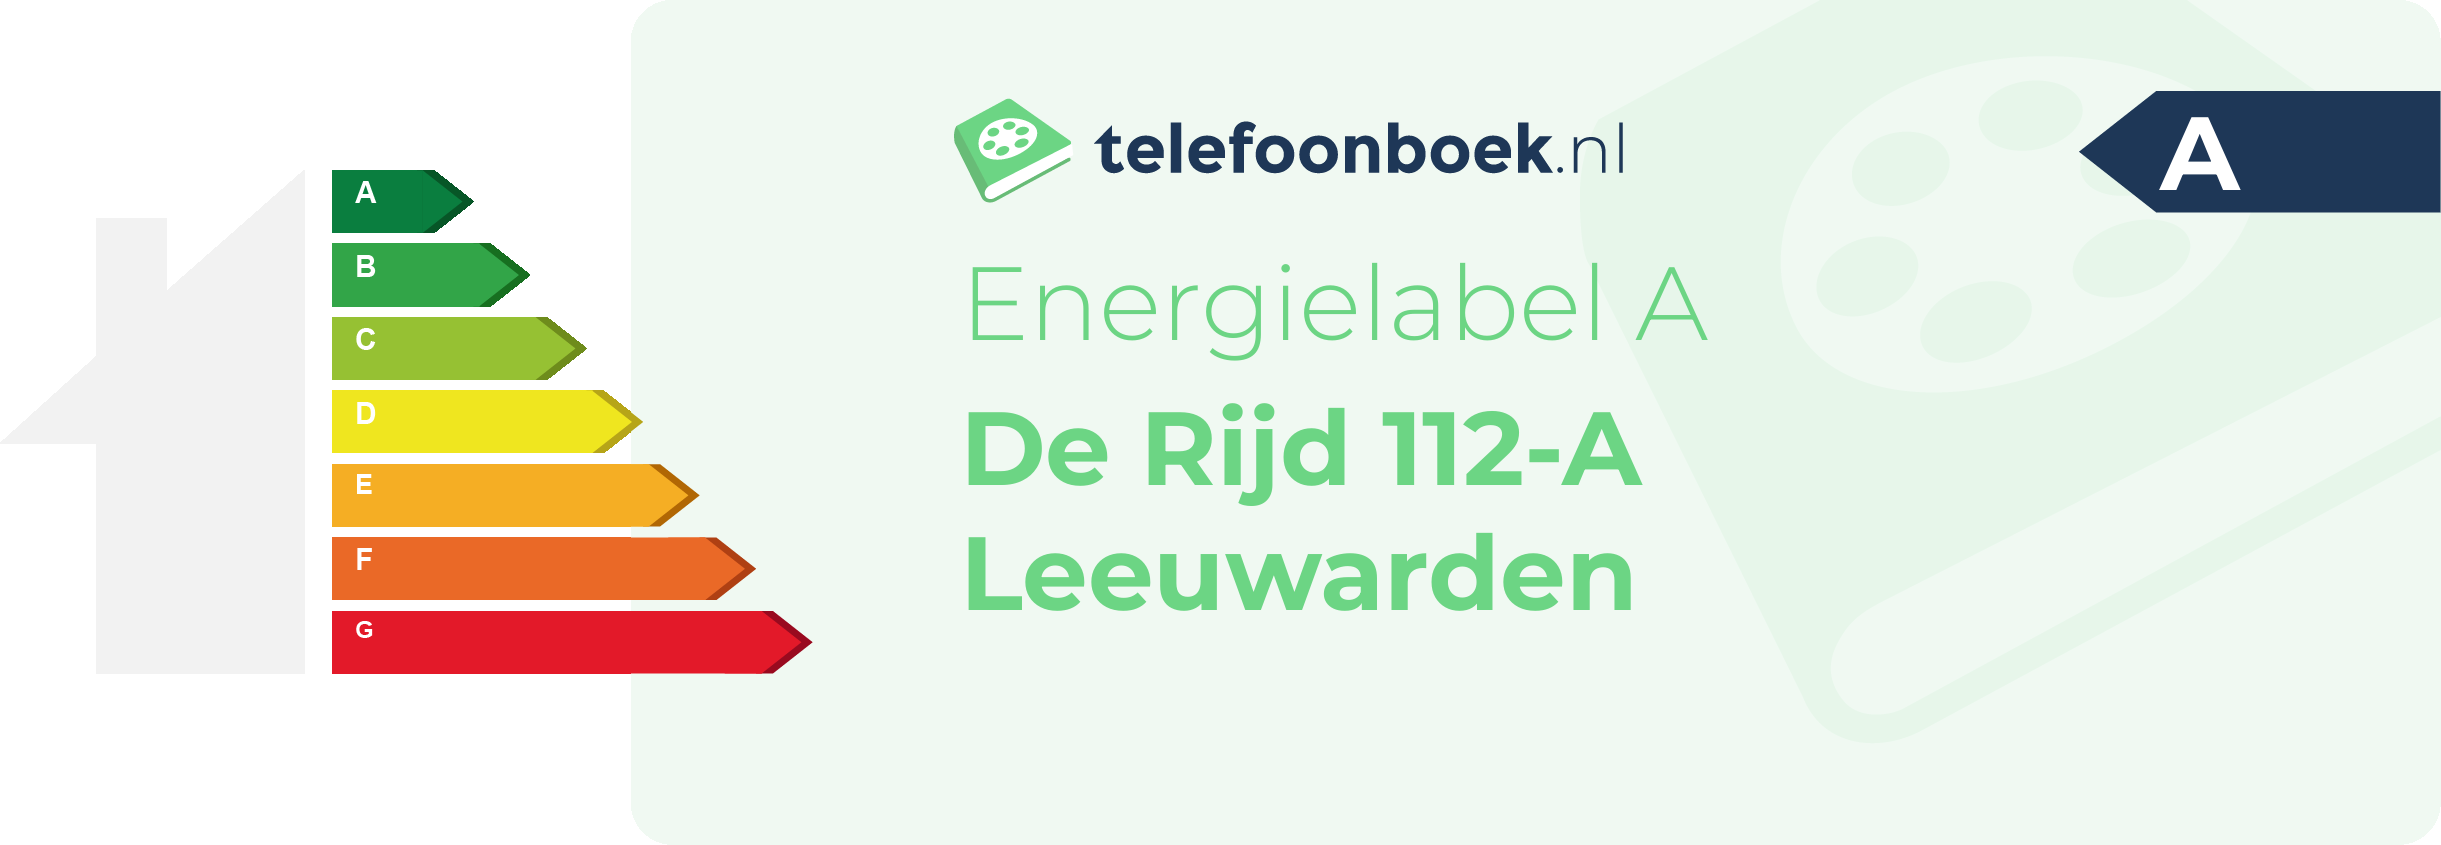 Energielabel De Rijd 112-A Leeuwarden